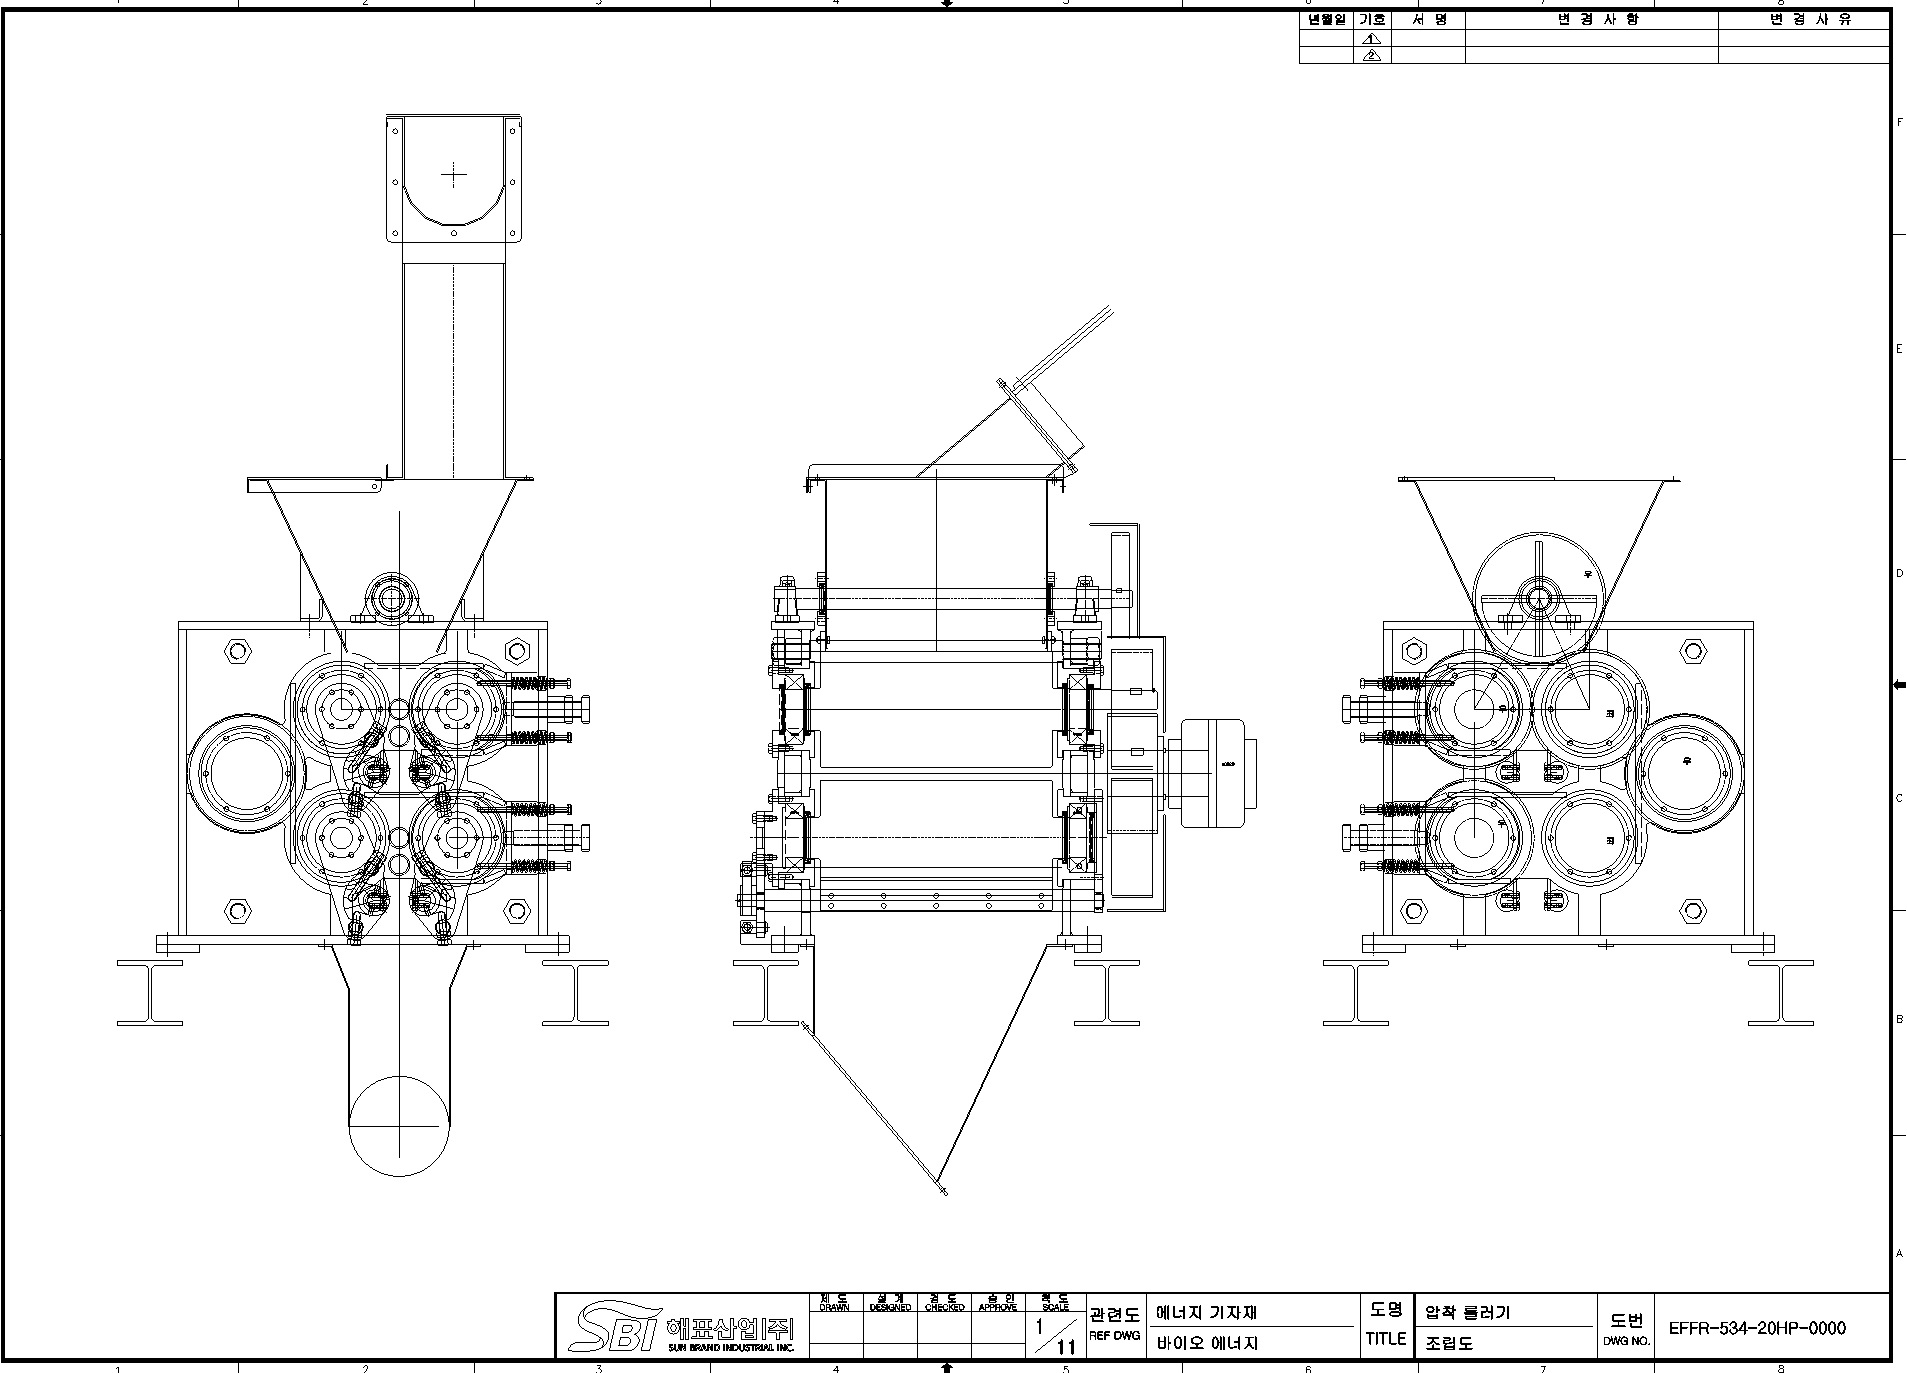 CAD for biomass compressor.